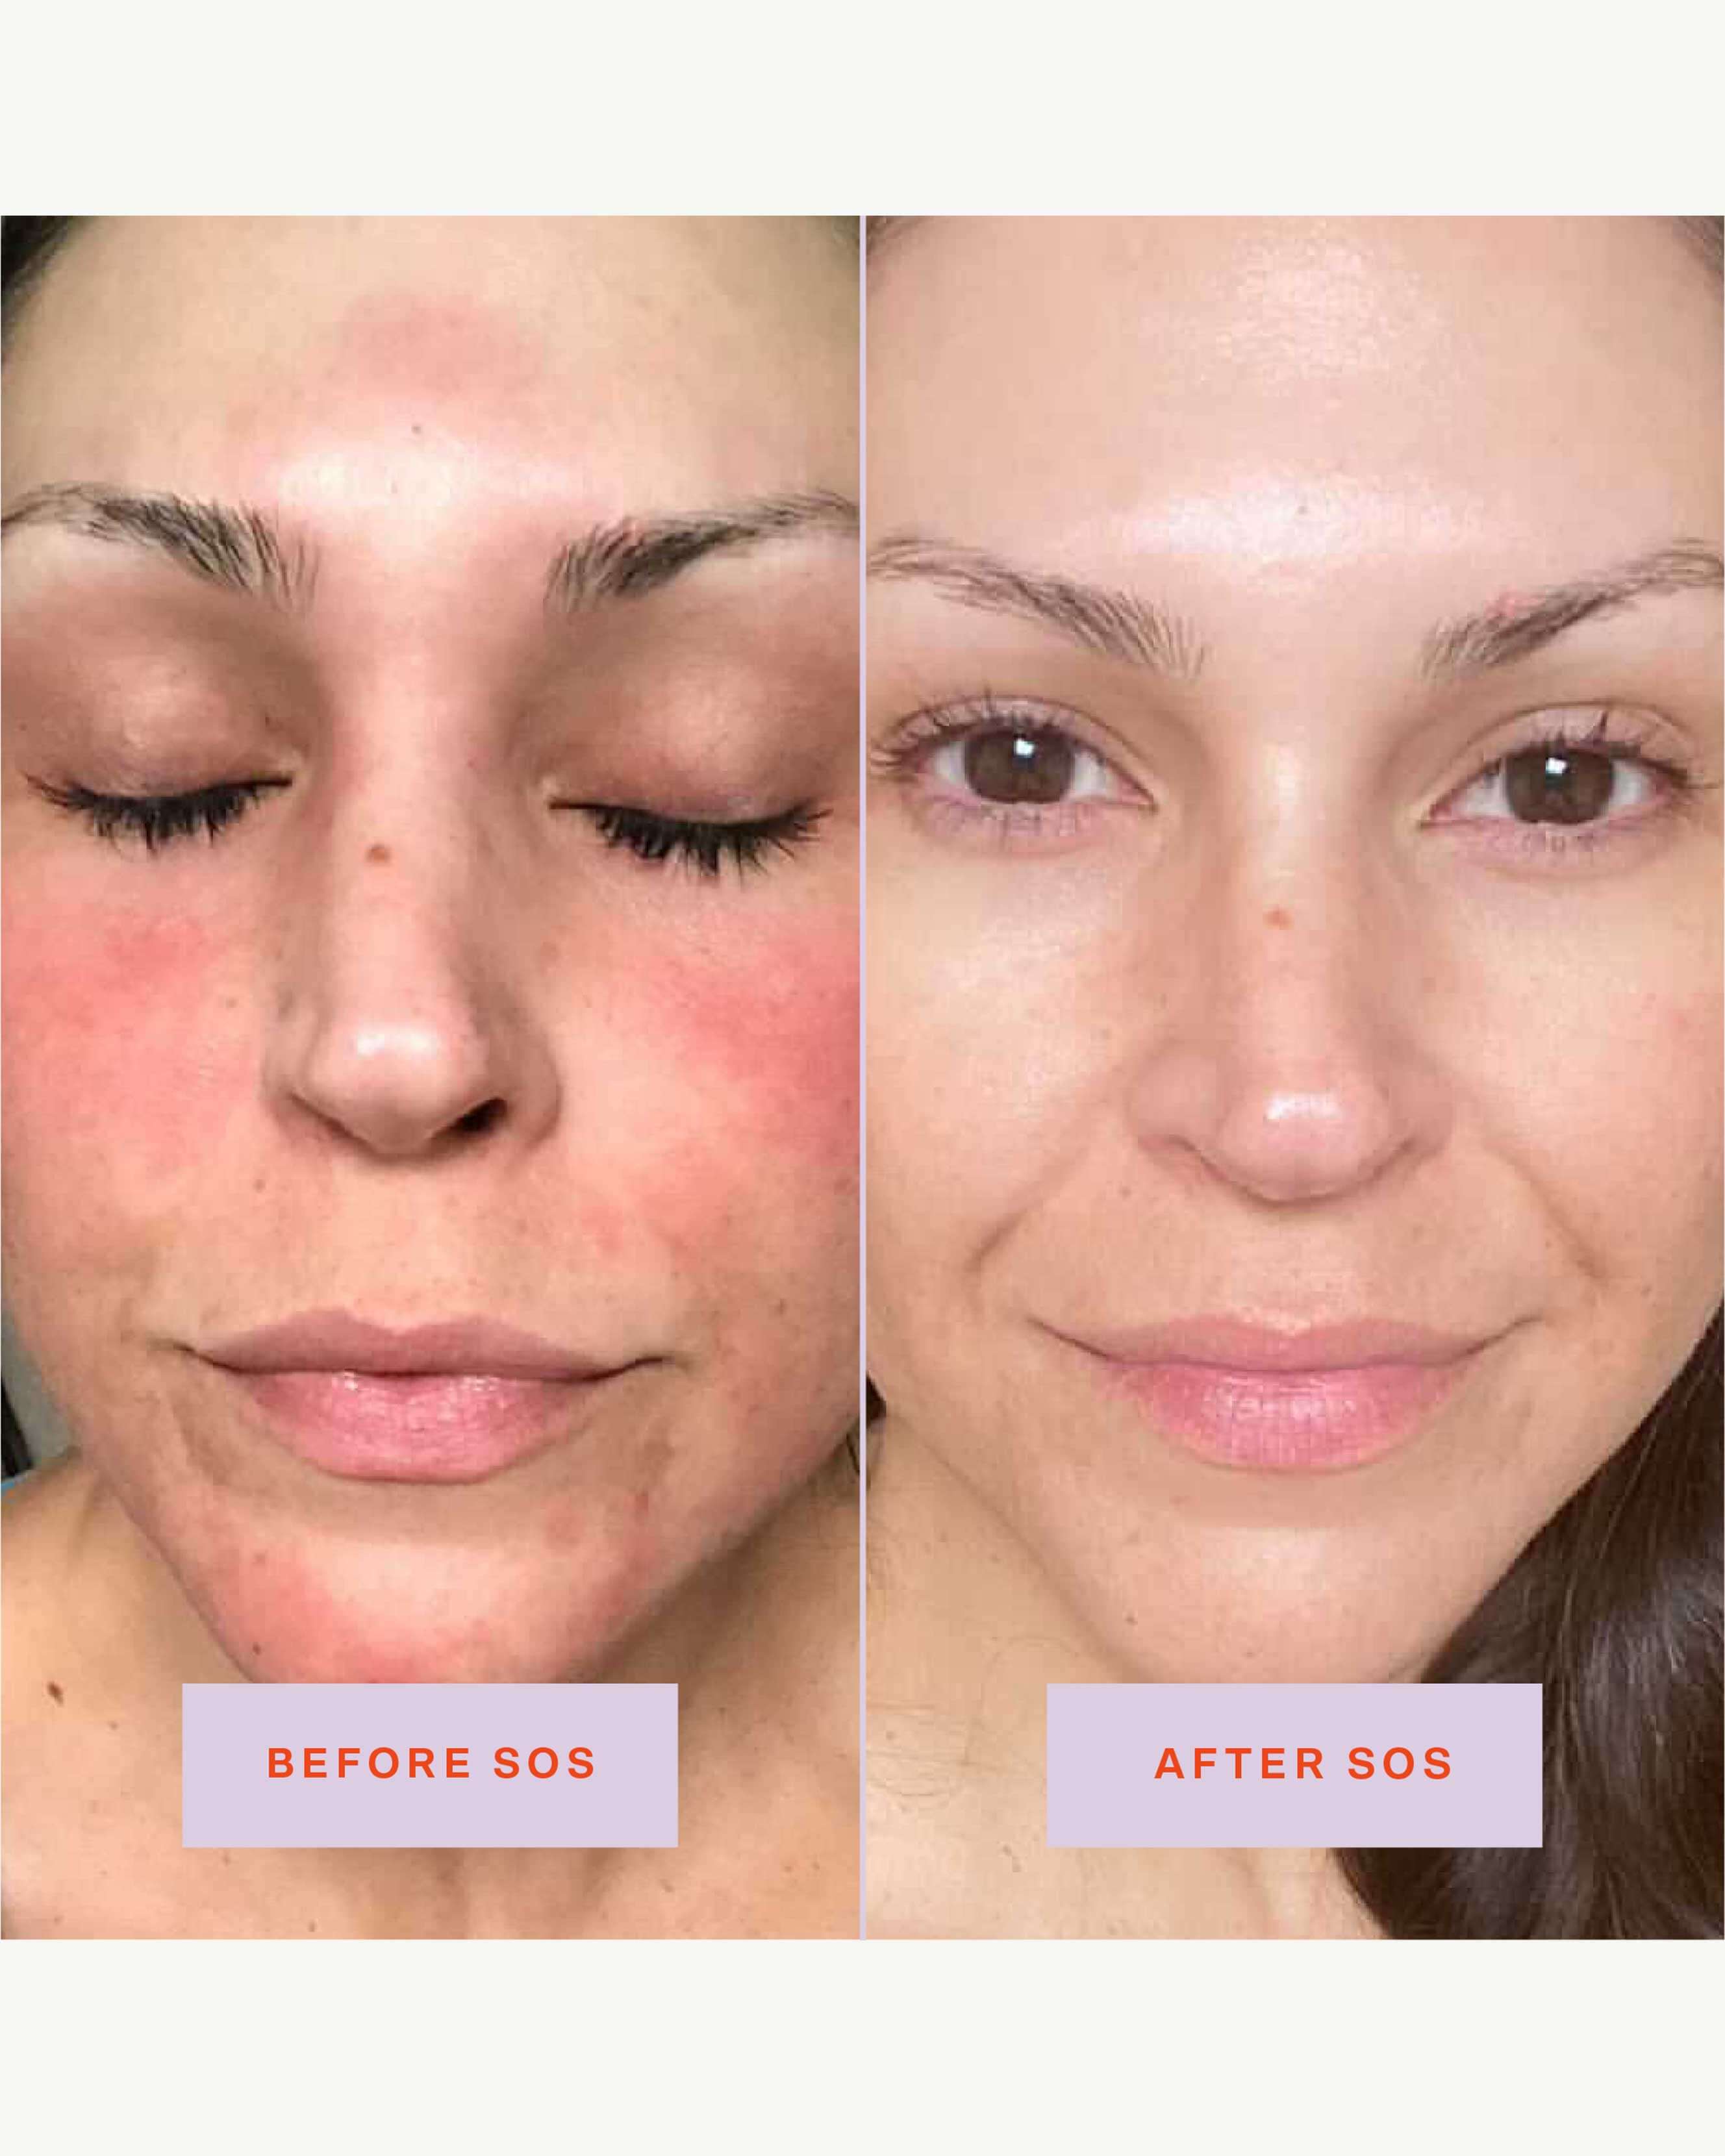 SOS (Save. Our. Skin) Daily Rescue Facial Spray